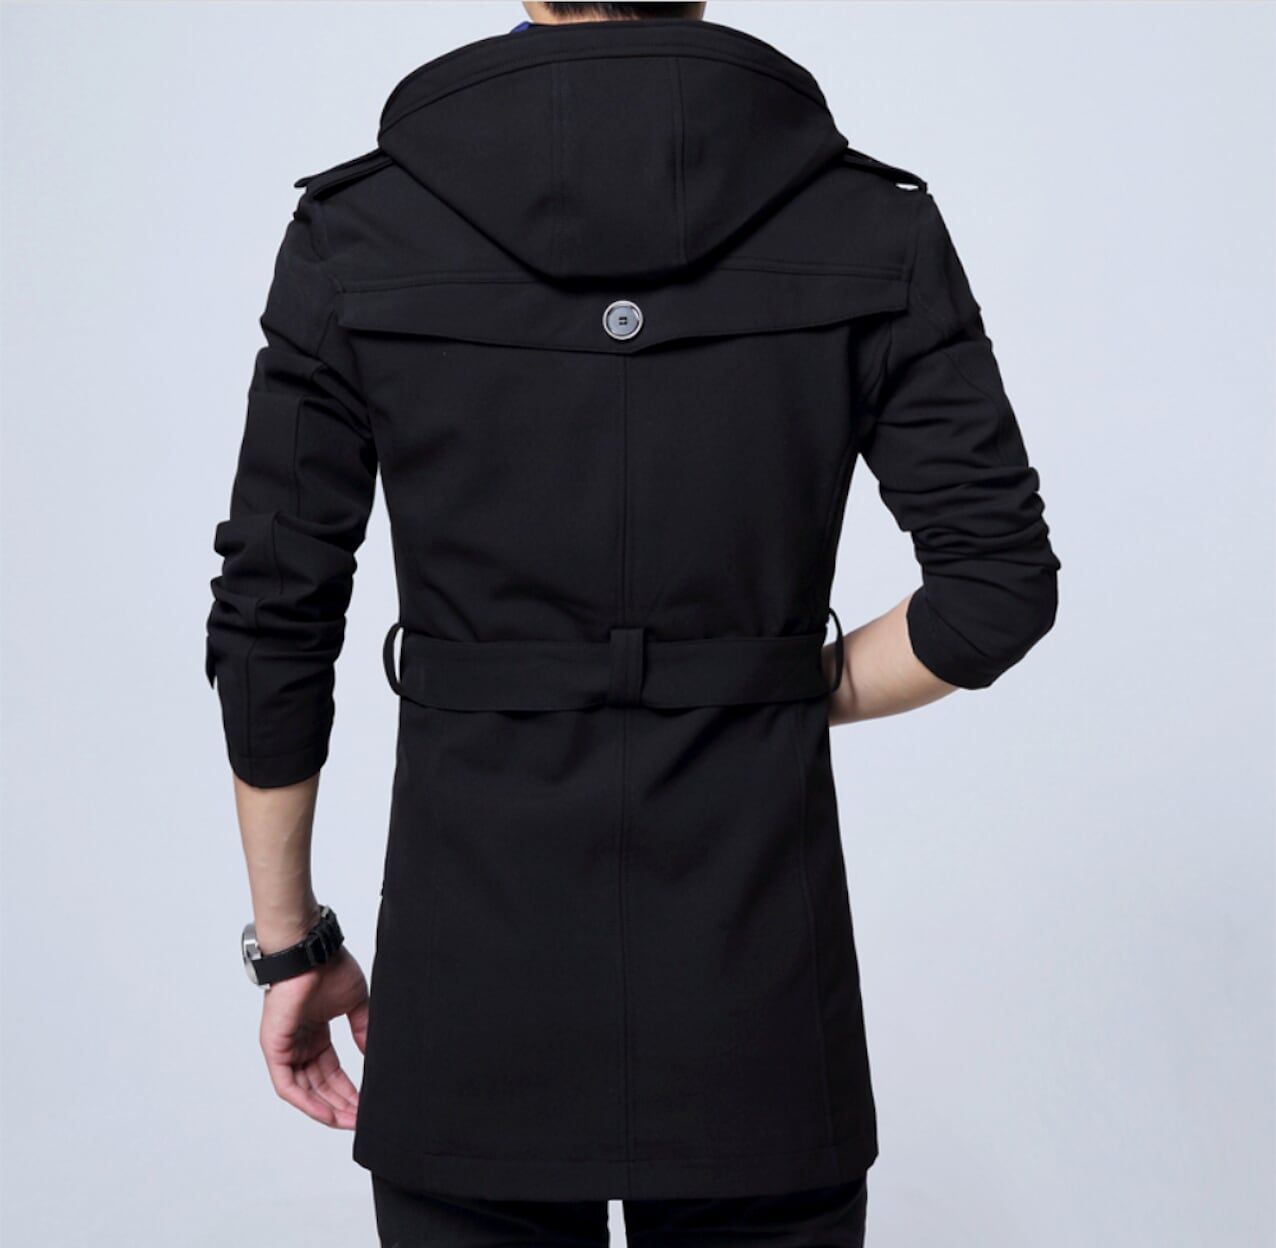 Mens Front Zip Trench Coat with Detachable Hood